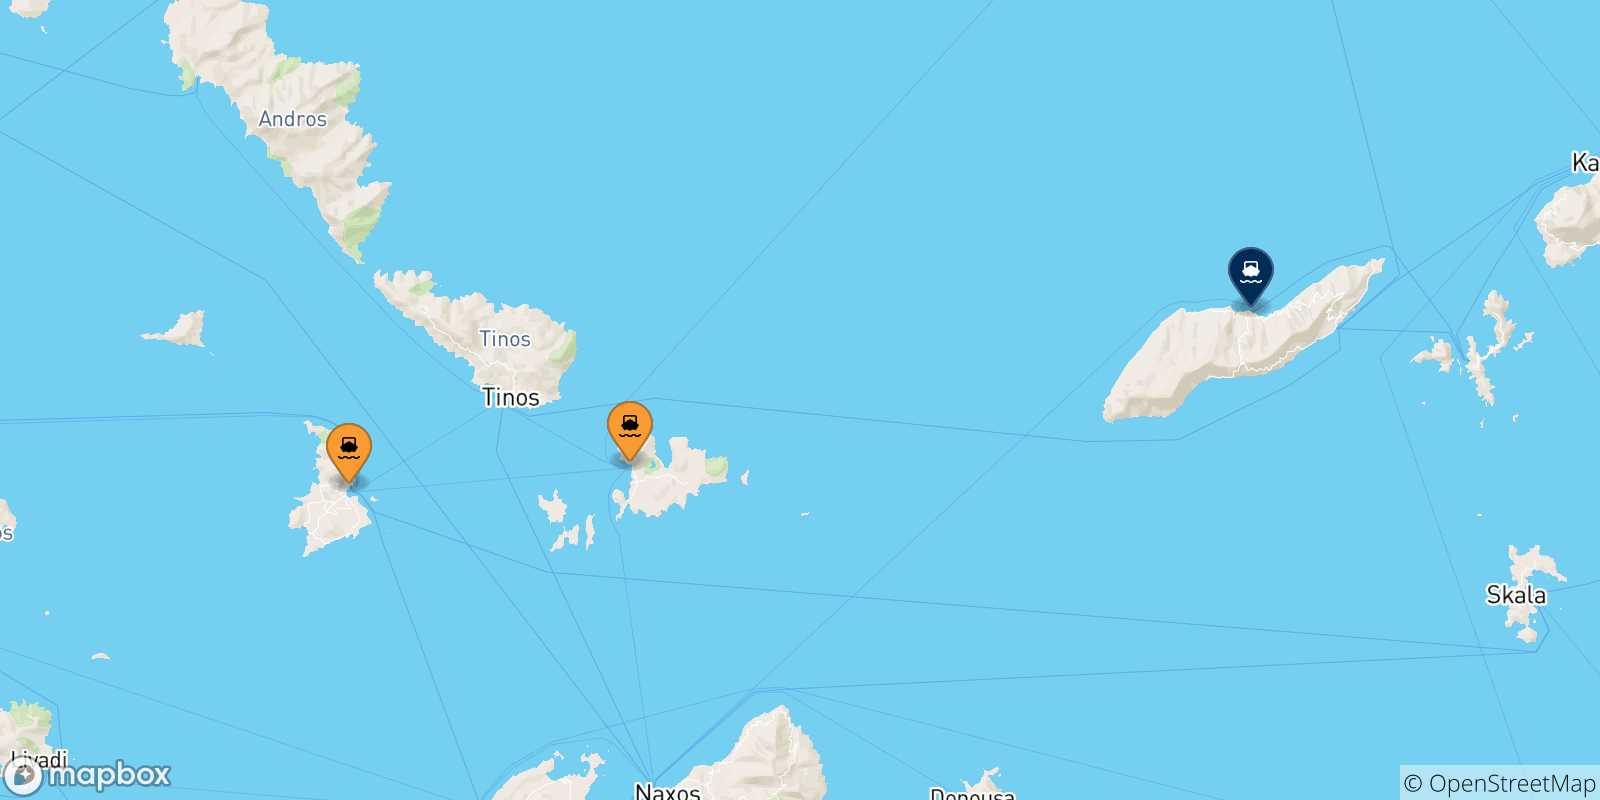 Mappa delle possibili rotte tra le Isole Cicladi e Agios Kirikos (Ikaria)